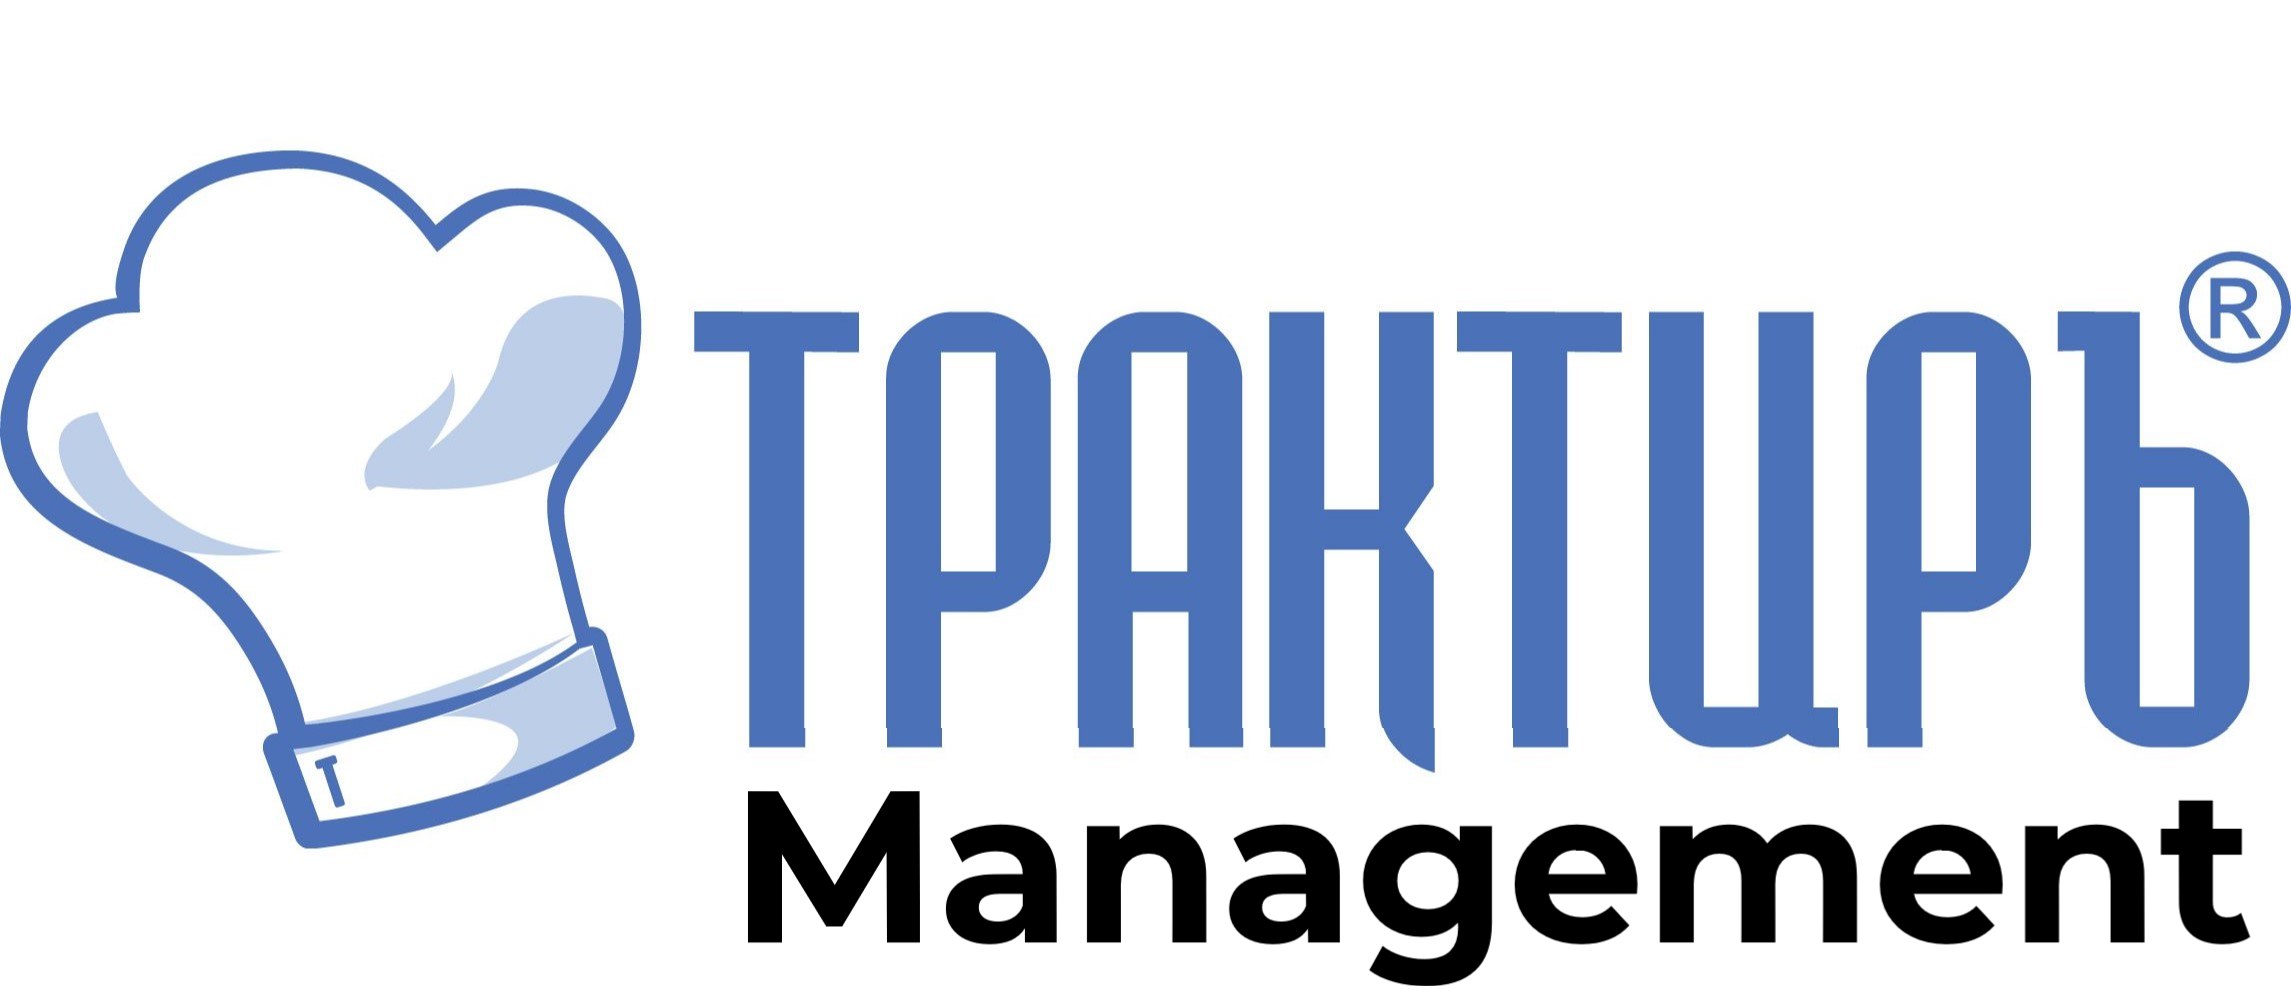 Трактиръ: Management в Новосибирске